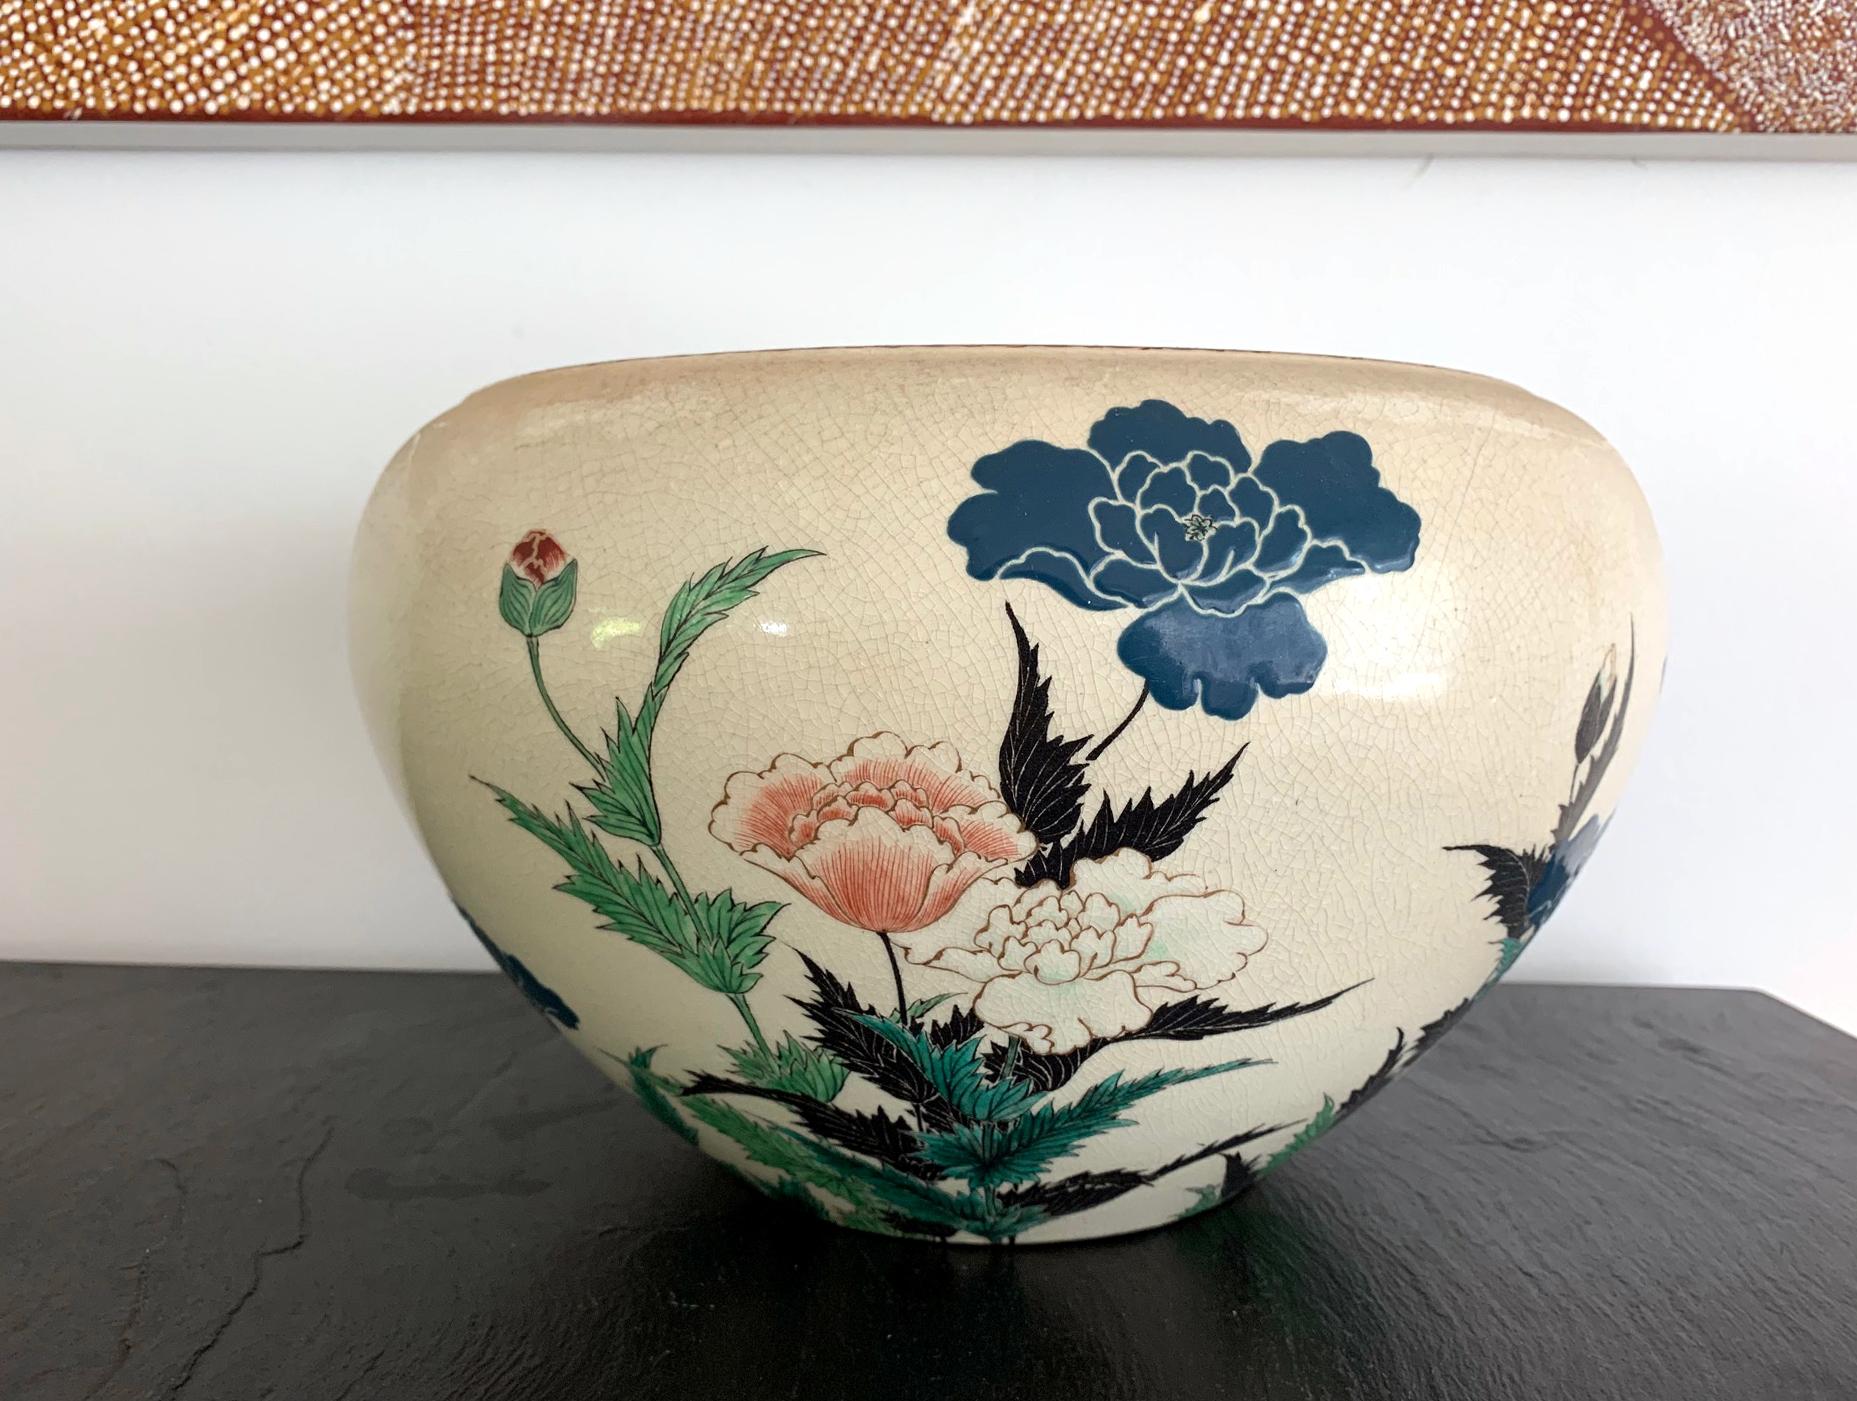 Eine wunderschön gearbeitete große Keramikschale als Tafelaufsatz von Okumura Shozan (1842-1905) im Kyo-yaki-Stil (Kyoto-Ware). Eine klassische eiförmige Form mit flach umgedrehtem Rand mit gewirbeltem Schneckenmuster. Das Stück wurde mit einem